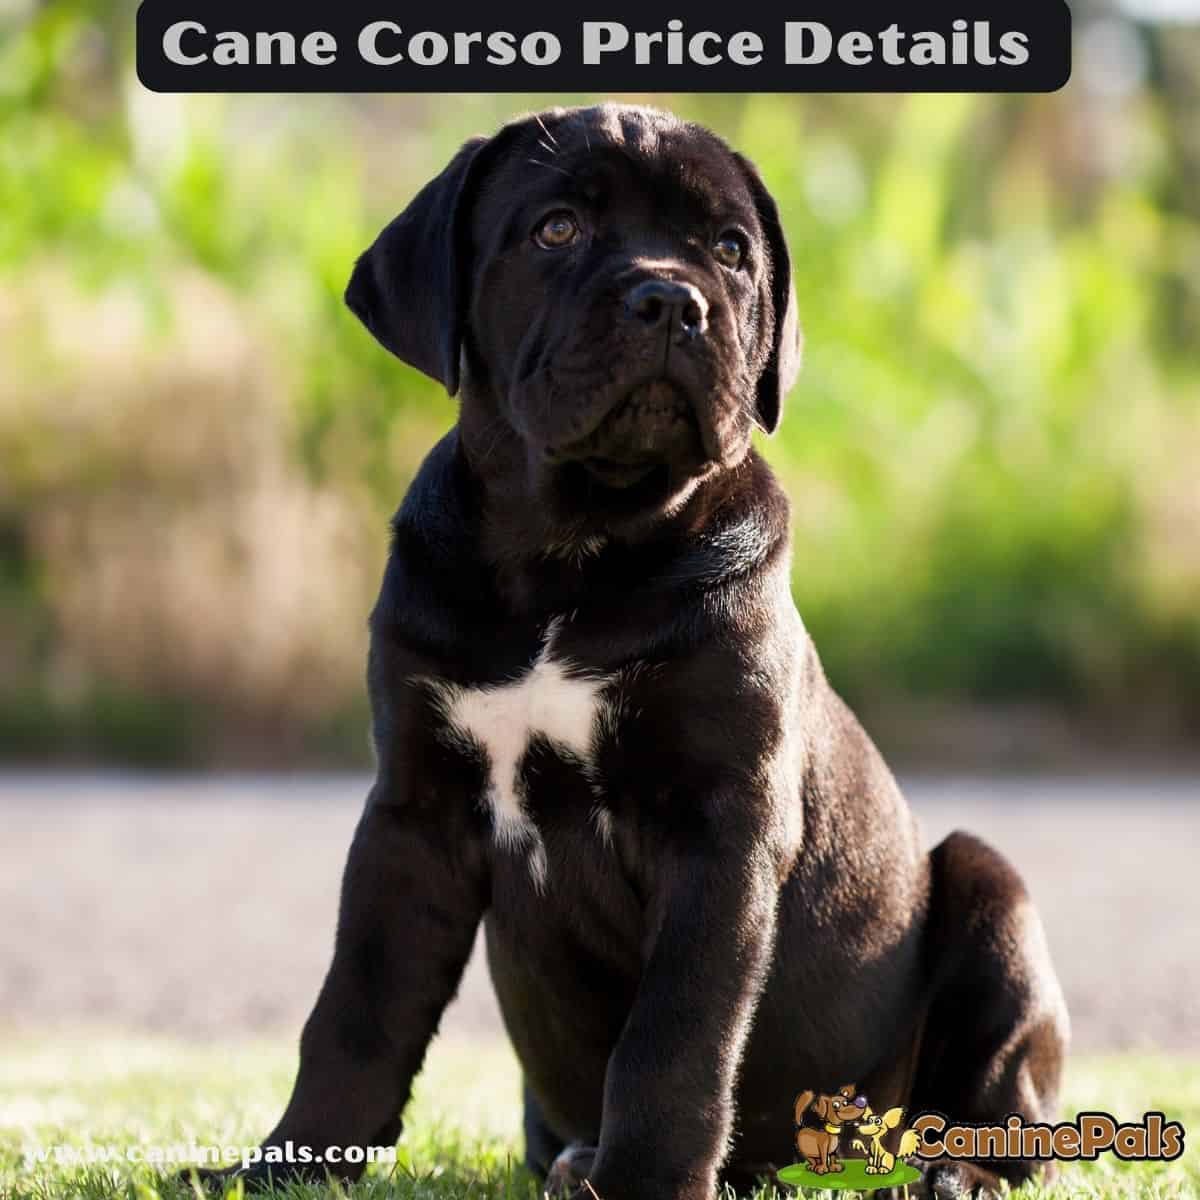 Cane Corso's Price